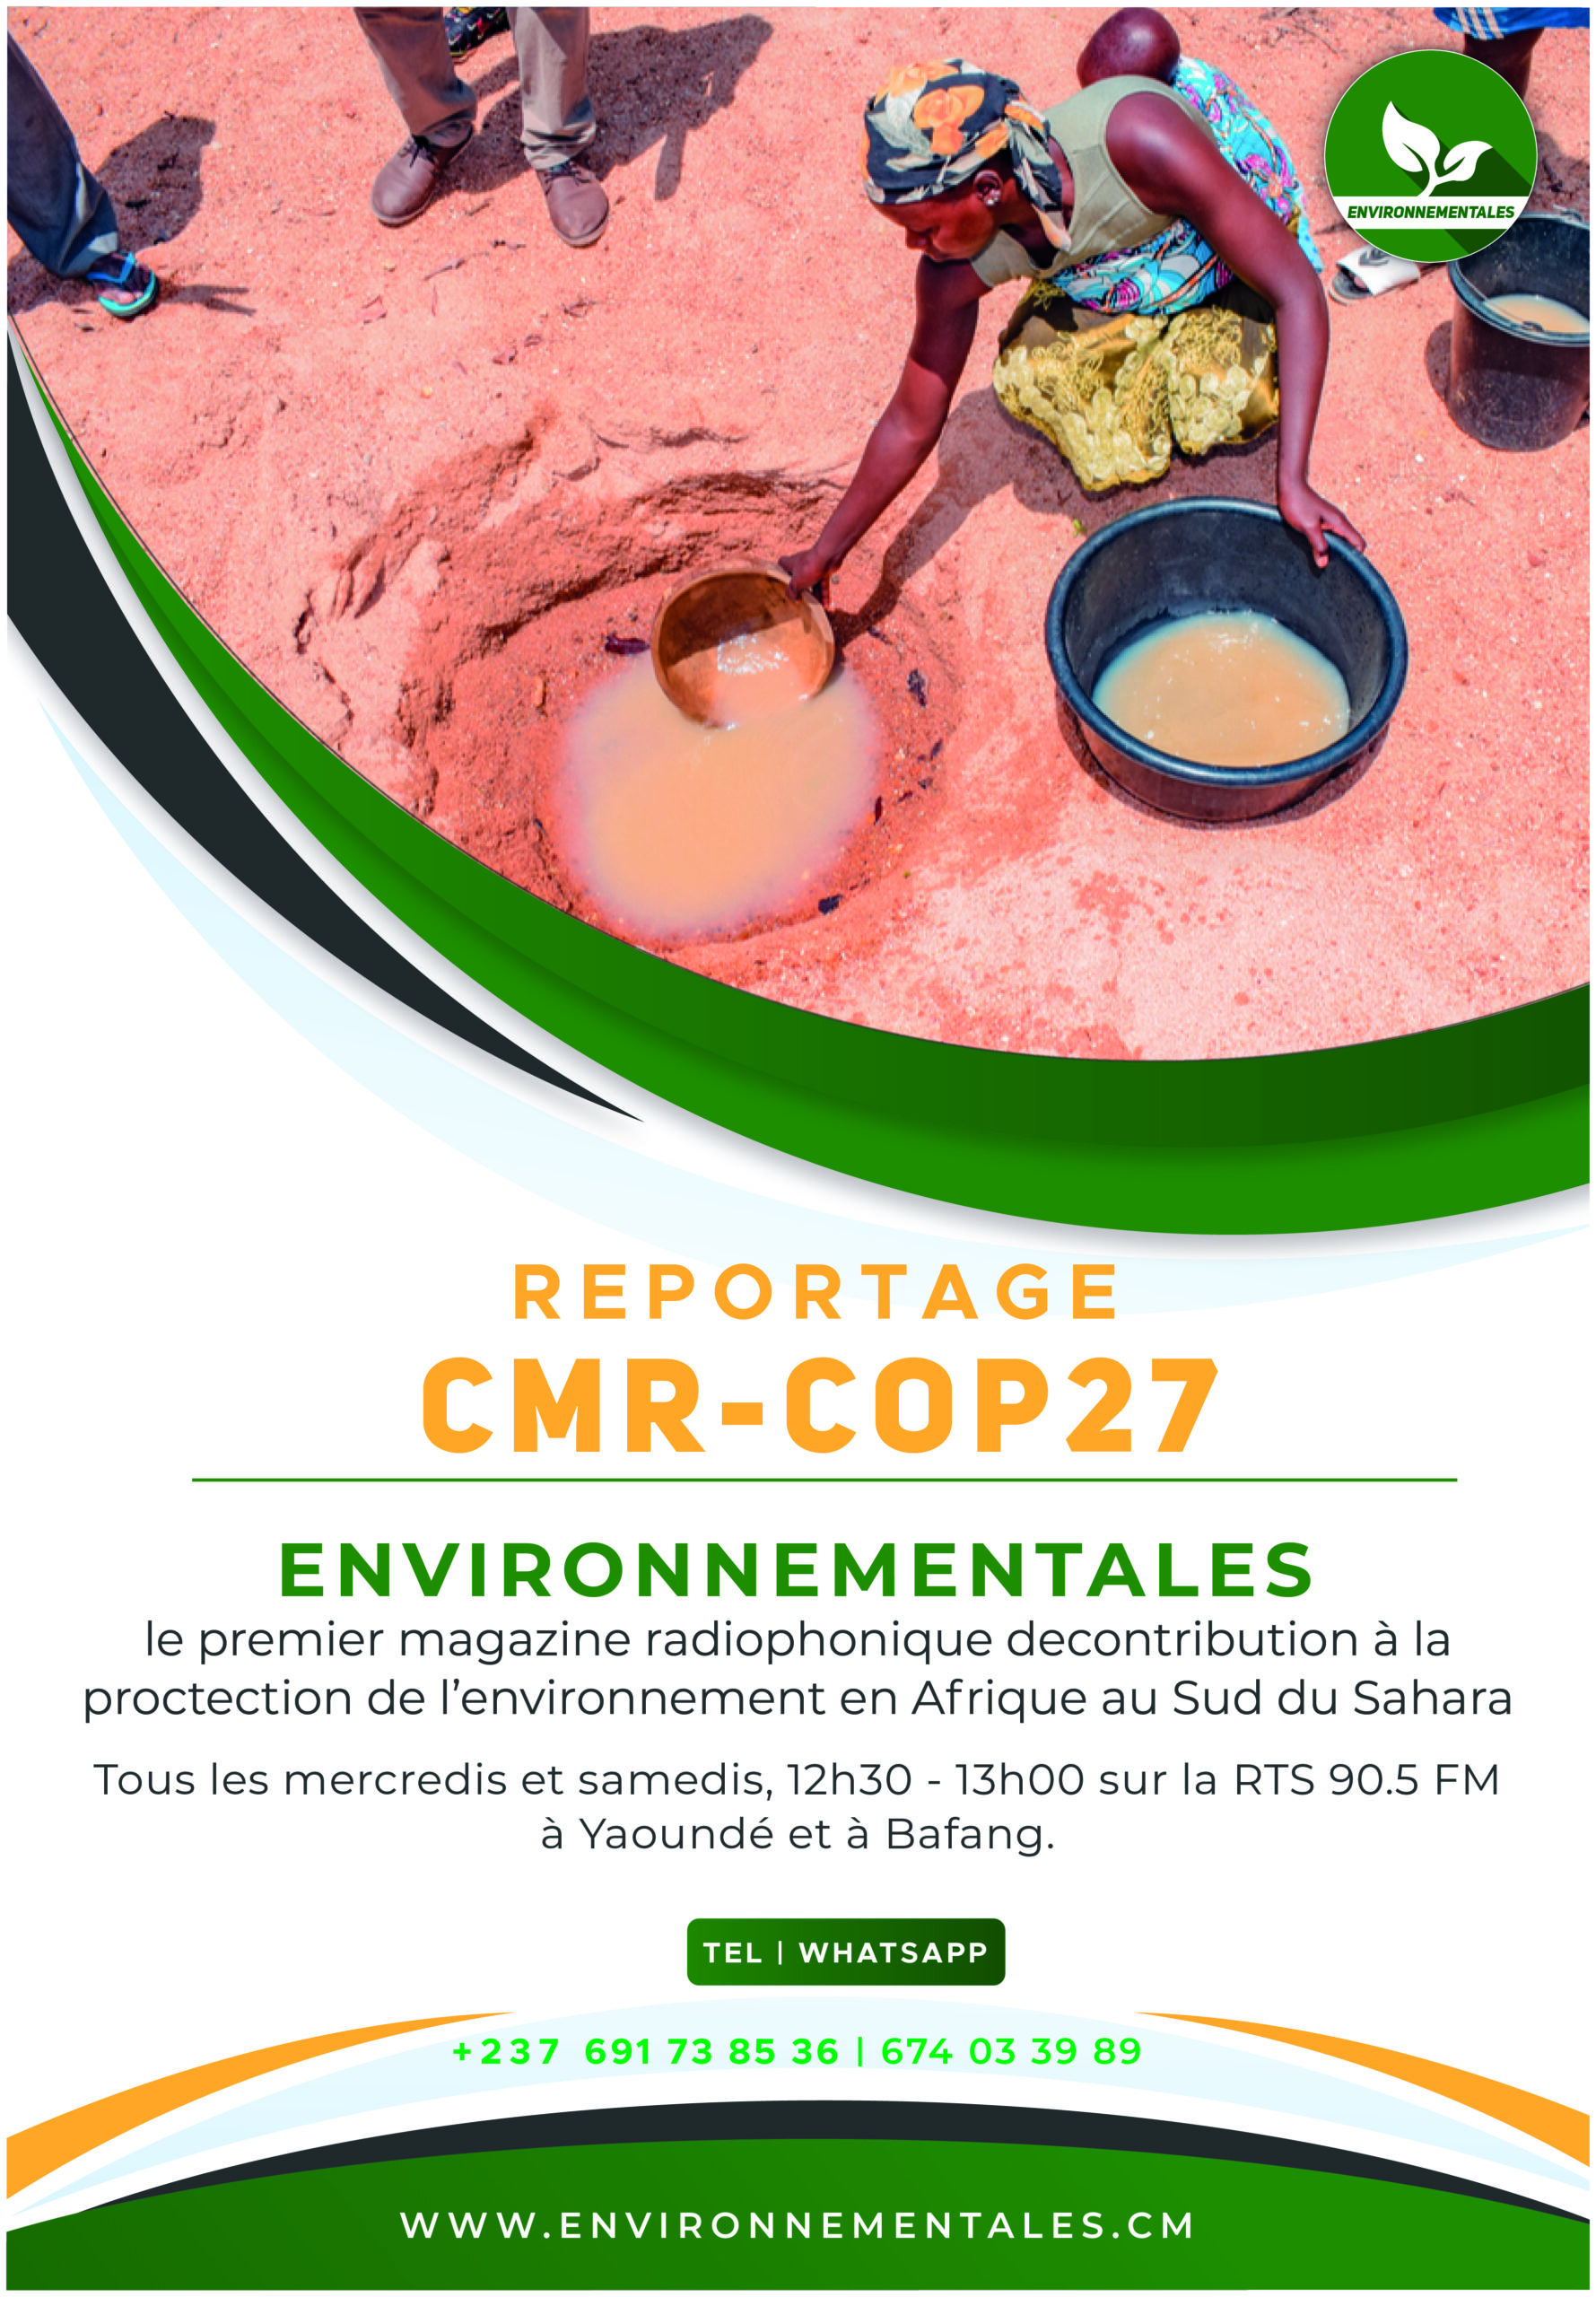 CAMEROUN : meurtris par le climat, les nordistes poussent des cris vers la COP27